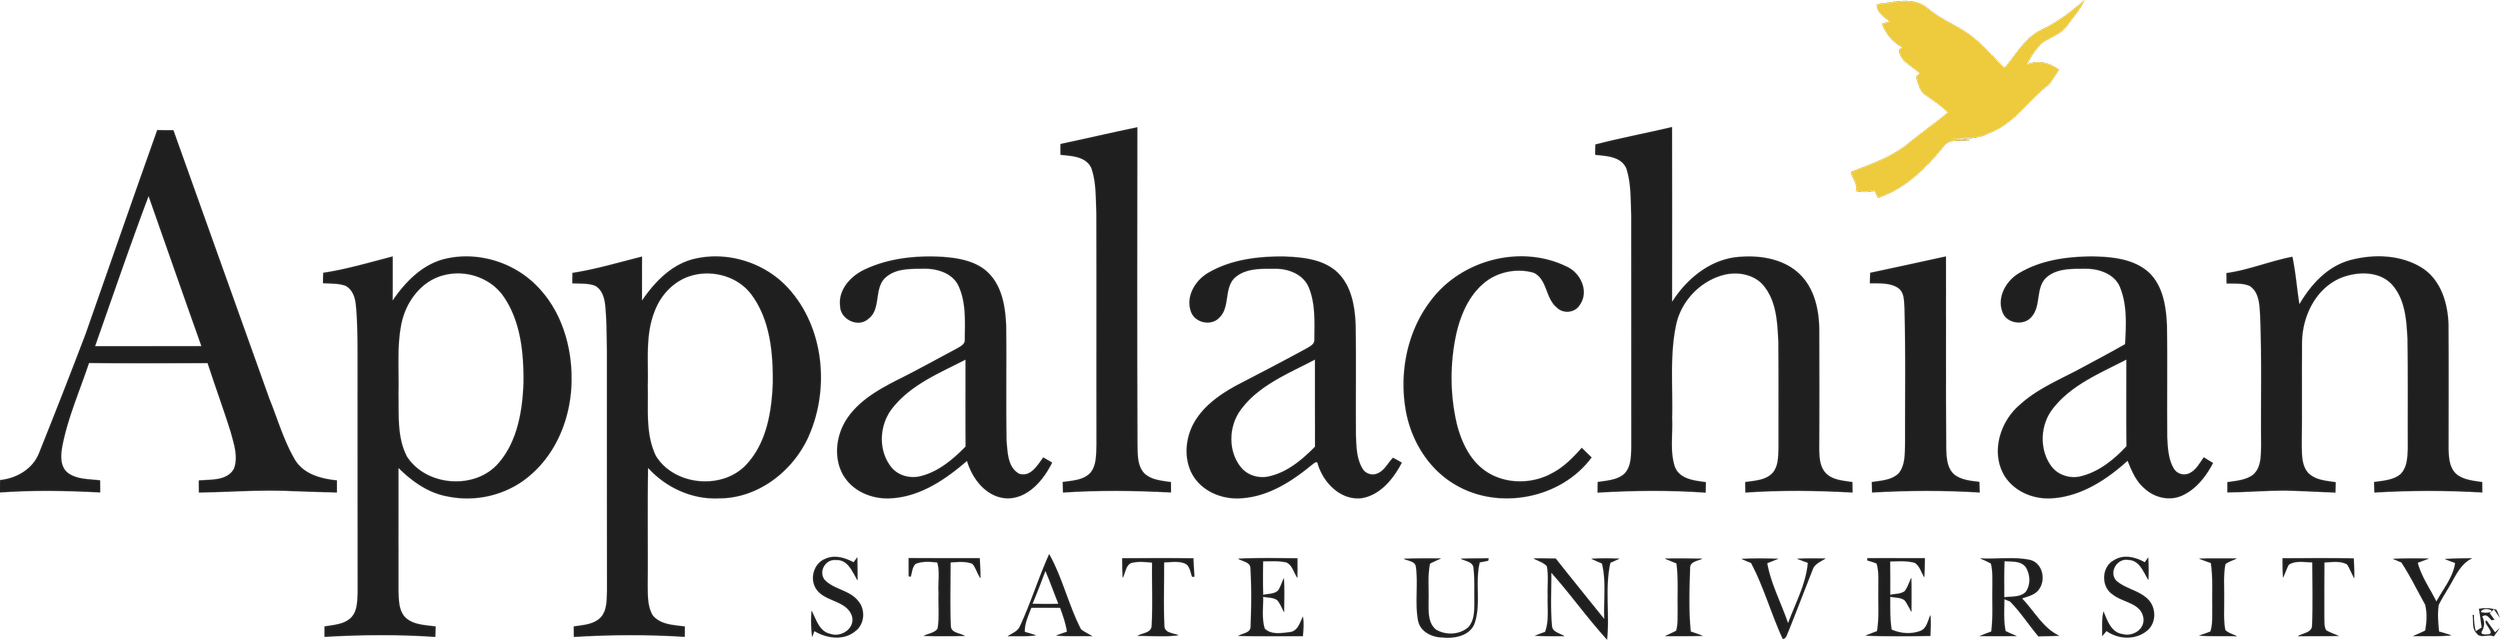 Appalachian_State_University_Logo.png